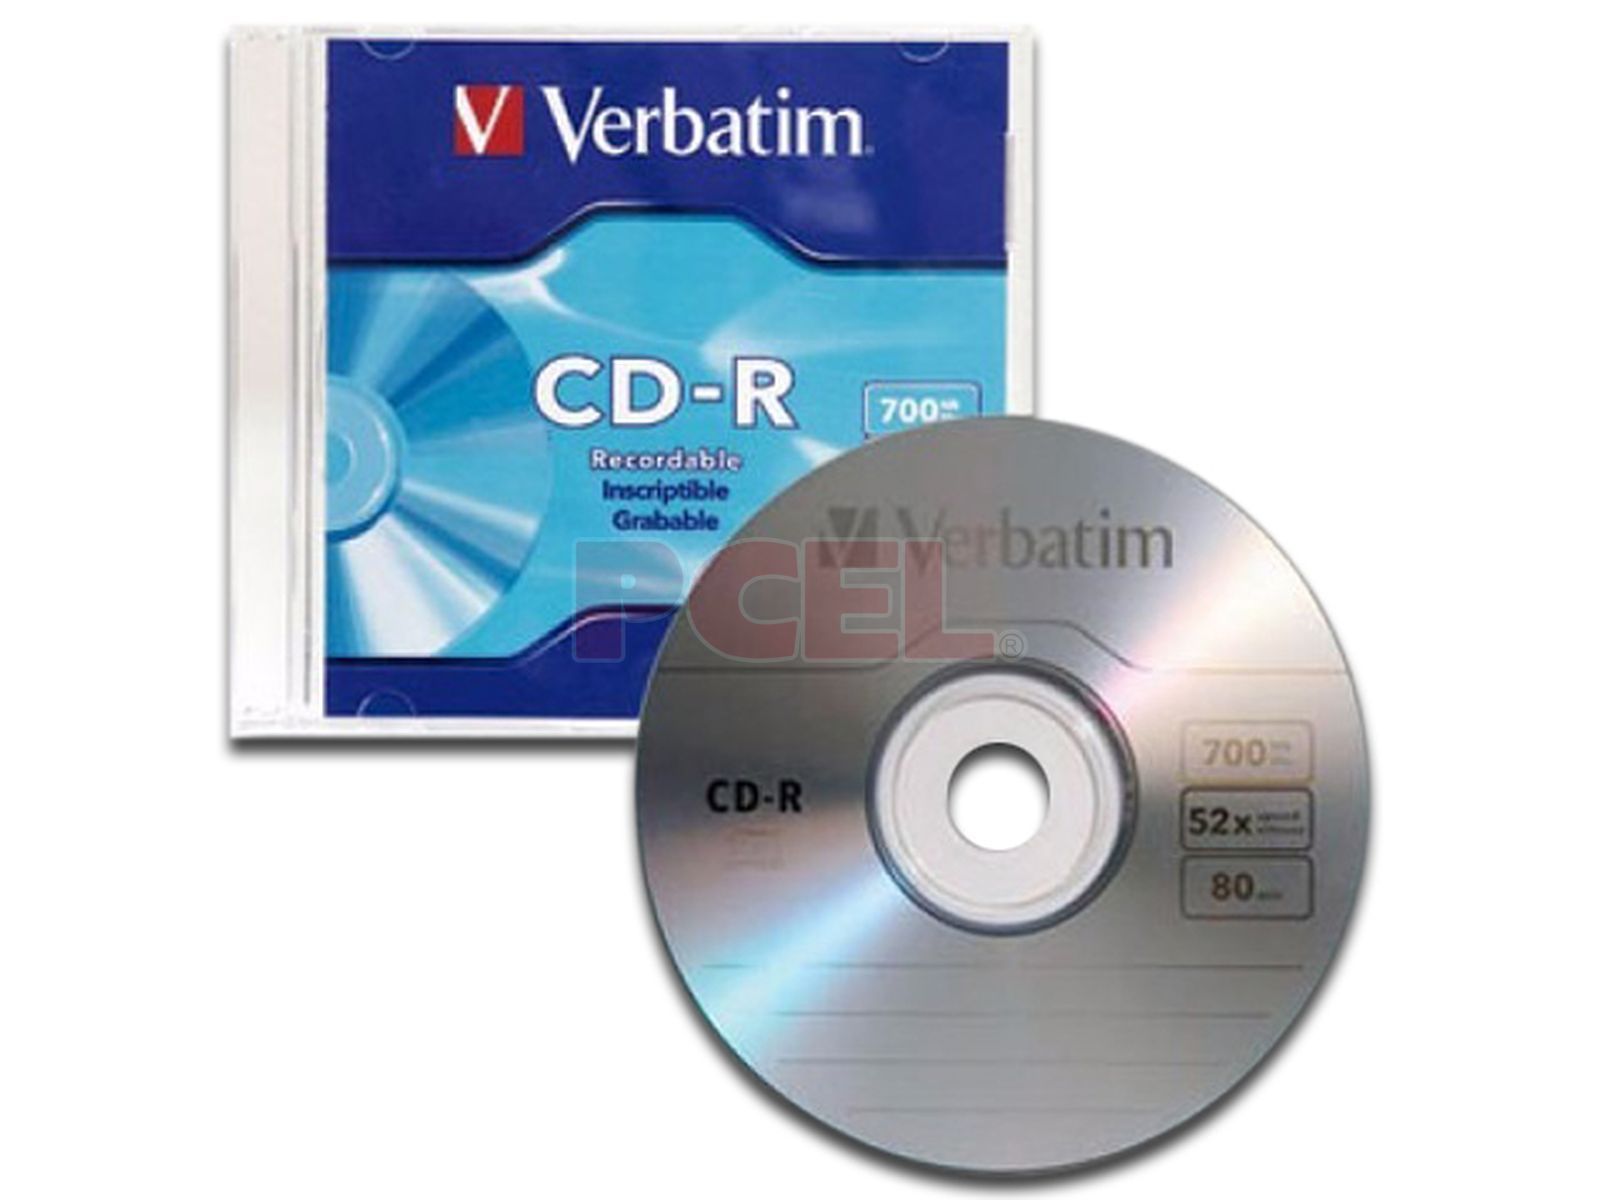 Pavimentación temporal Serena CD-R Verbatim de 700MB, 80Min., 52x, Caja Slim, 1 pieza.